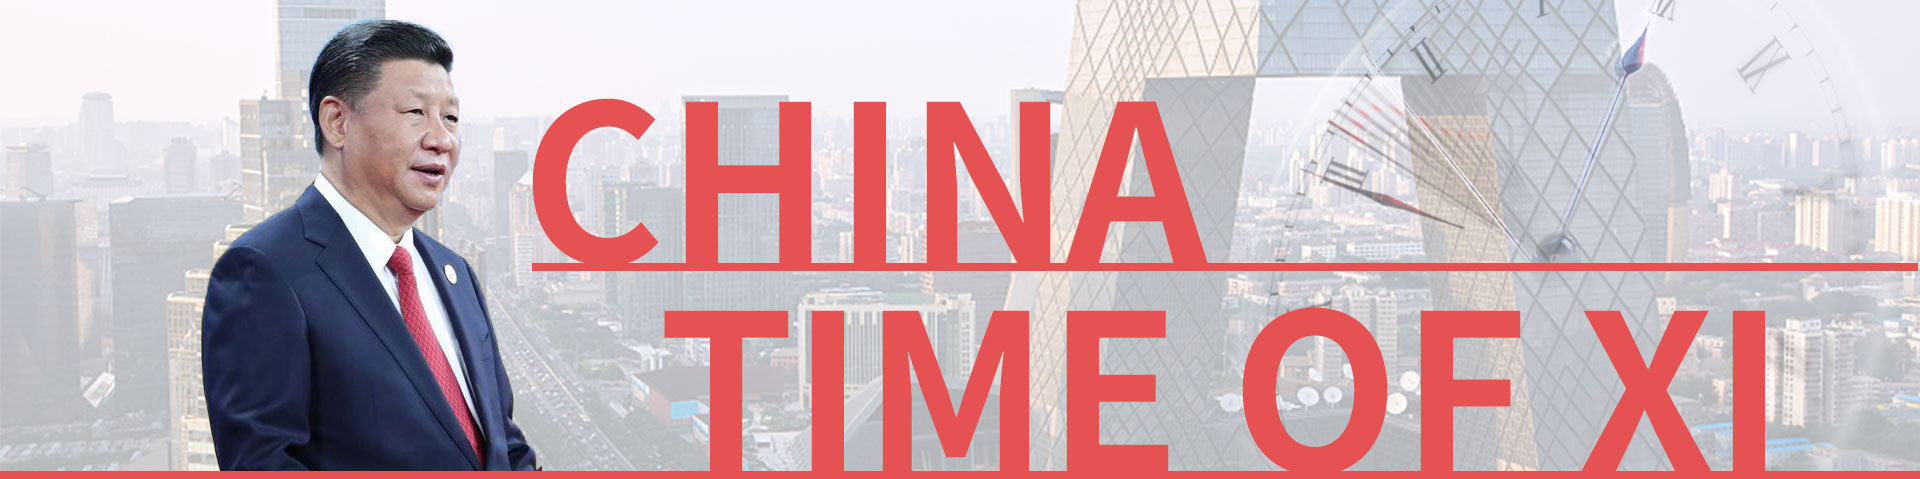 china-time-of-xi-english-scio-gov-cn